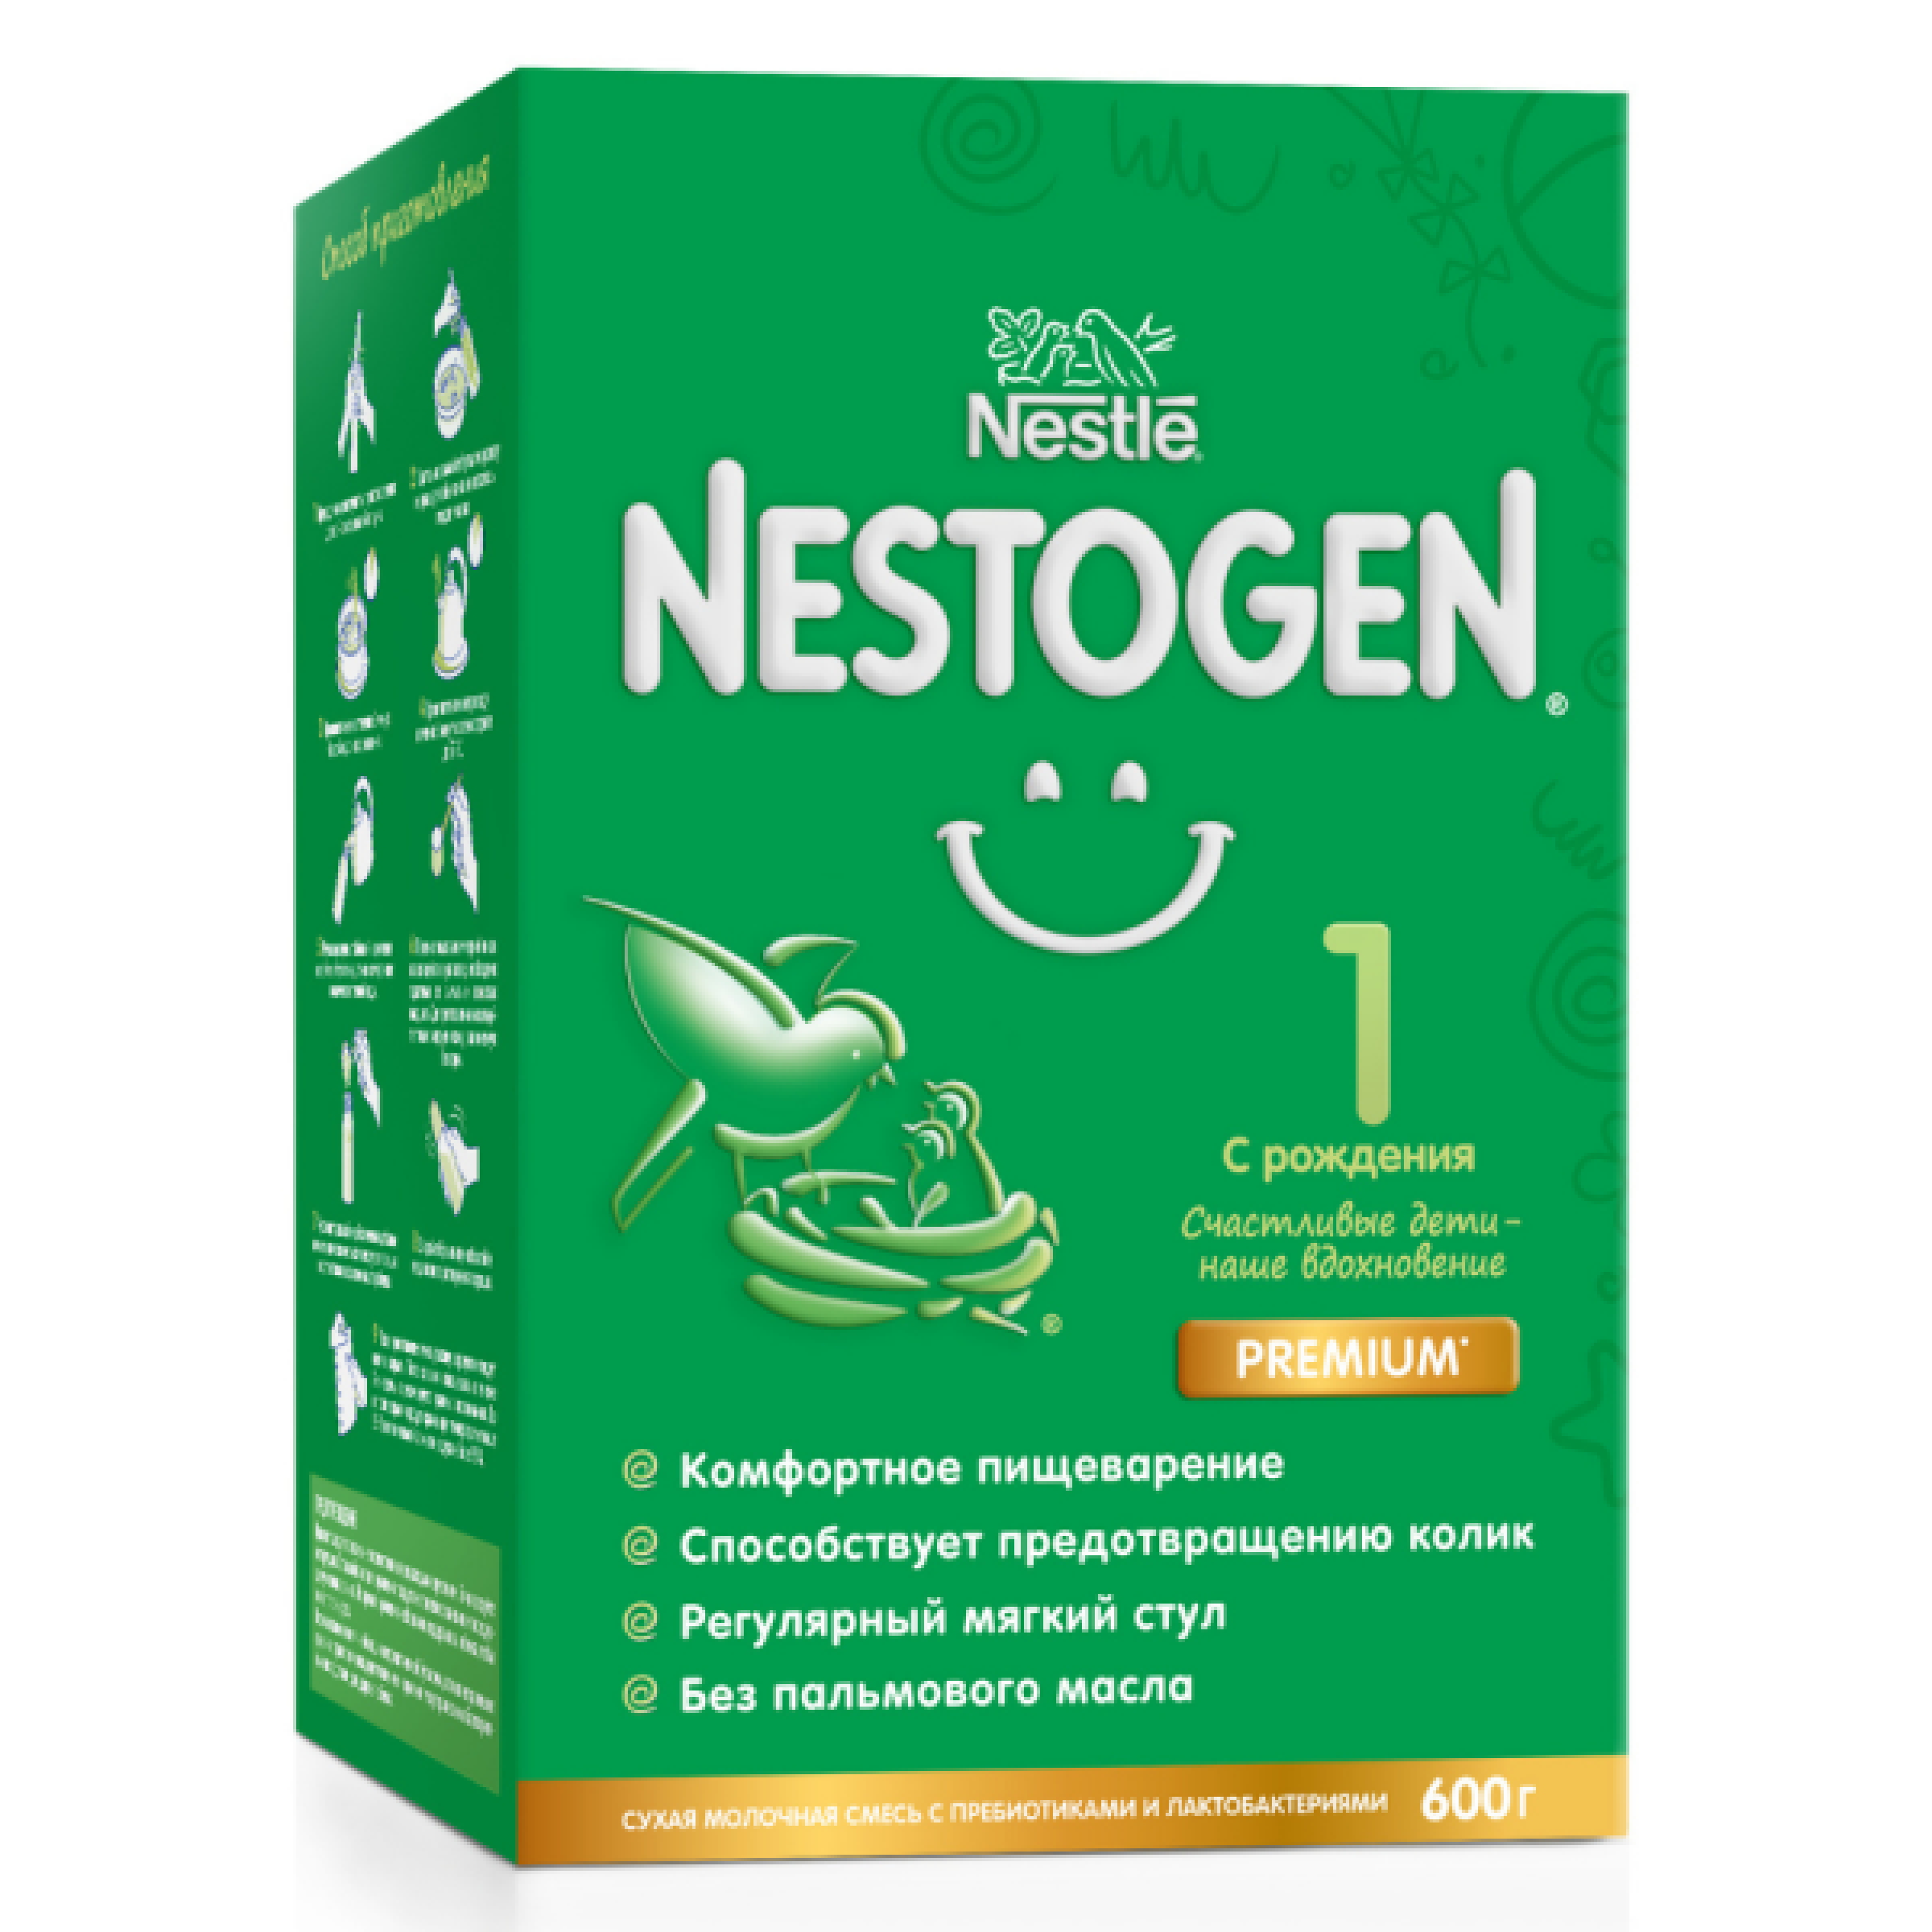 Сухой быстрорастворимый молочный напиток Nestogen 1 для детей с 0 месяцев с пребиотиками и лактобактериями 600 г